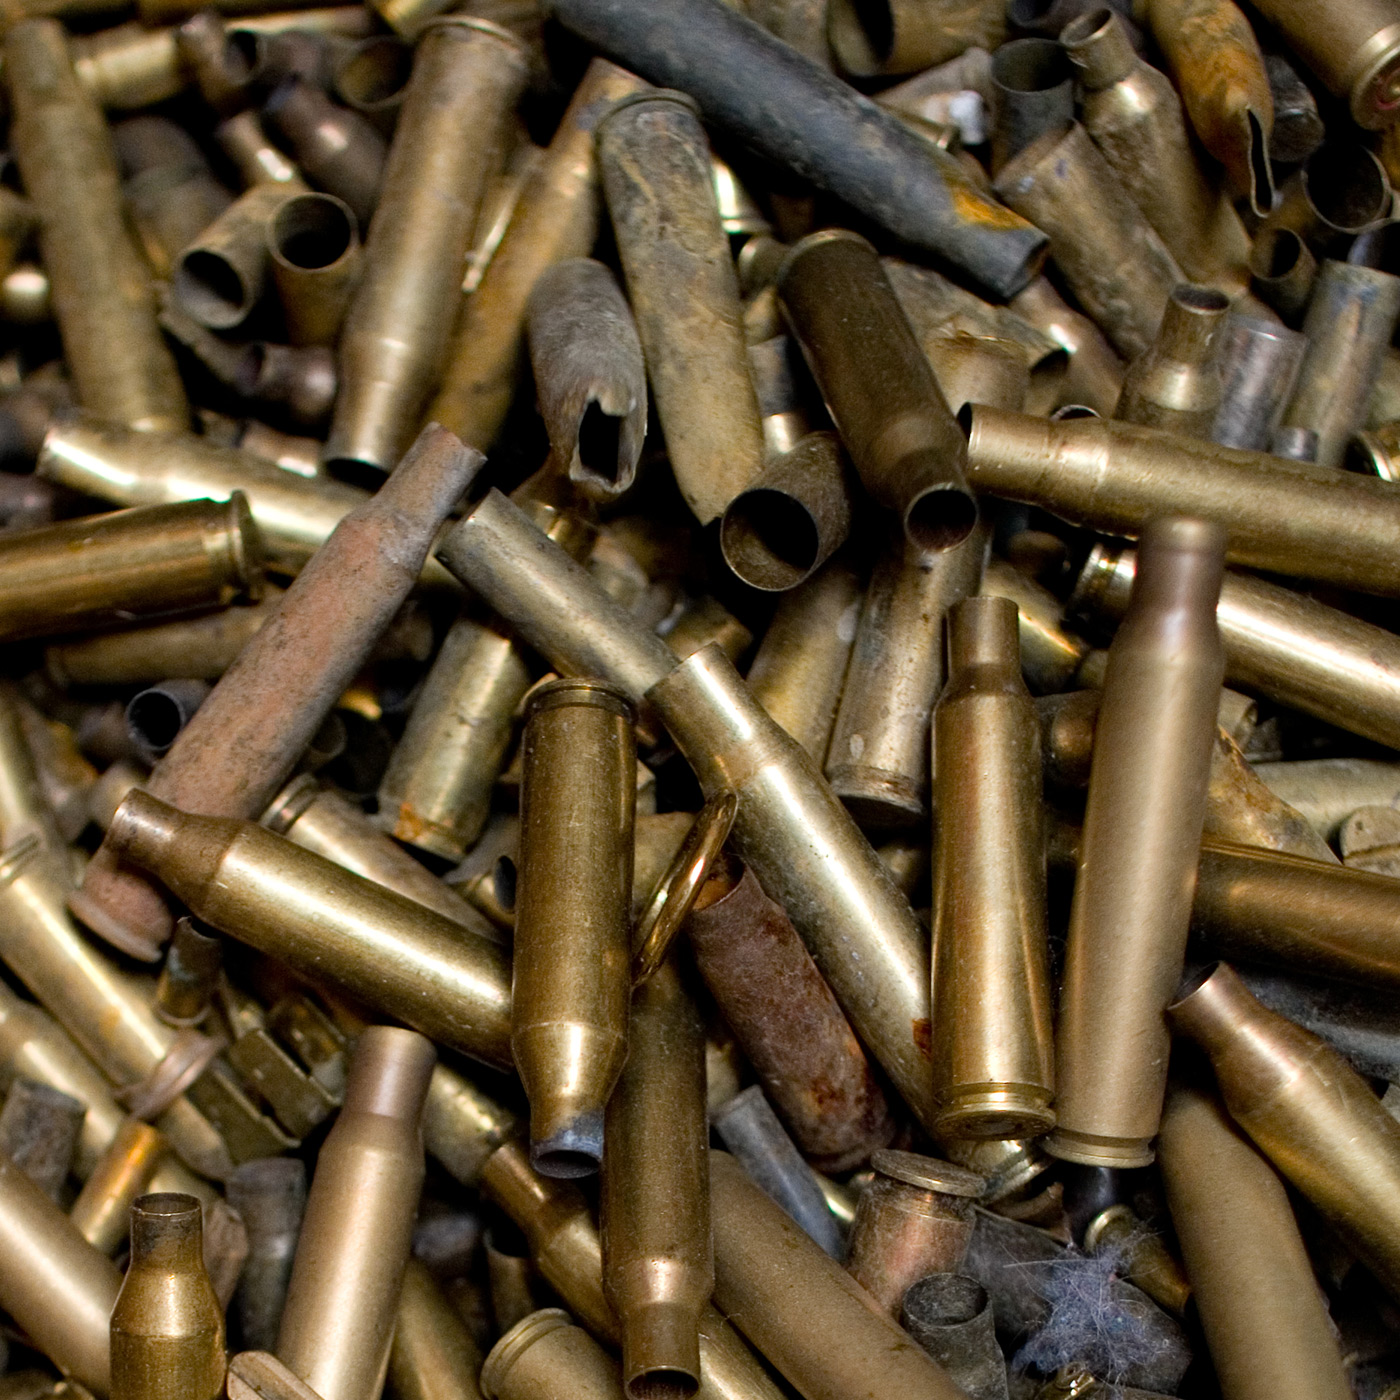 Brass ammunition casings